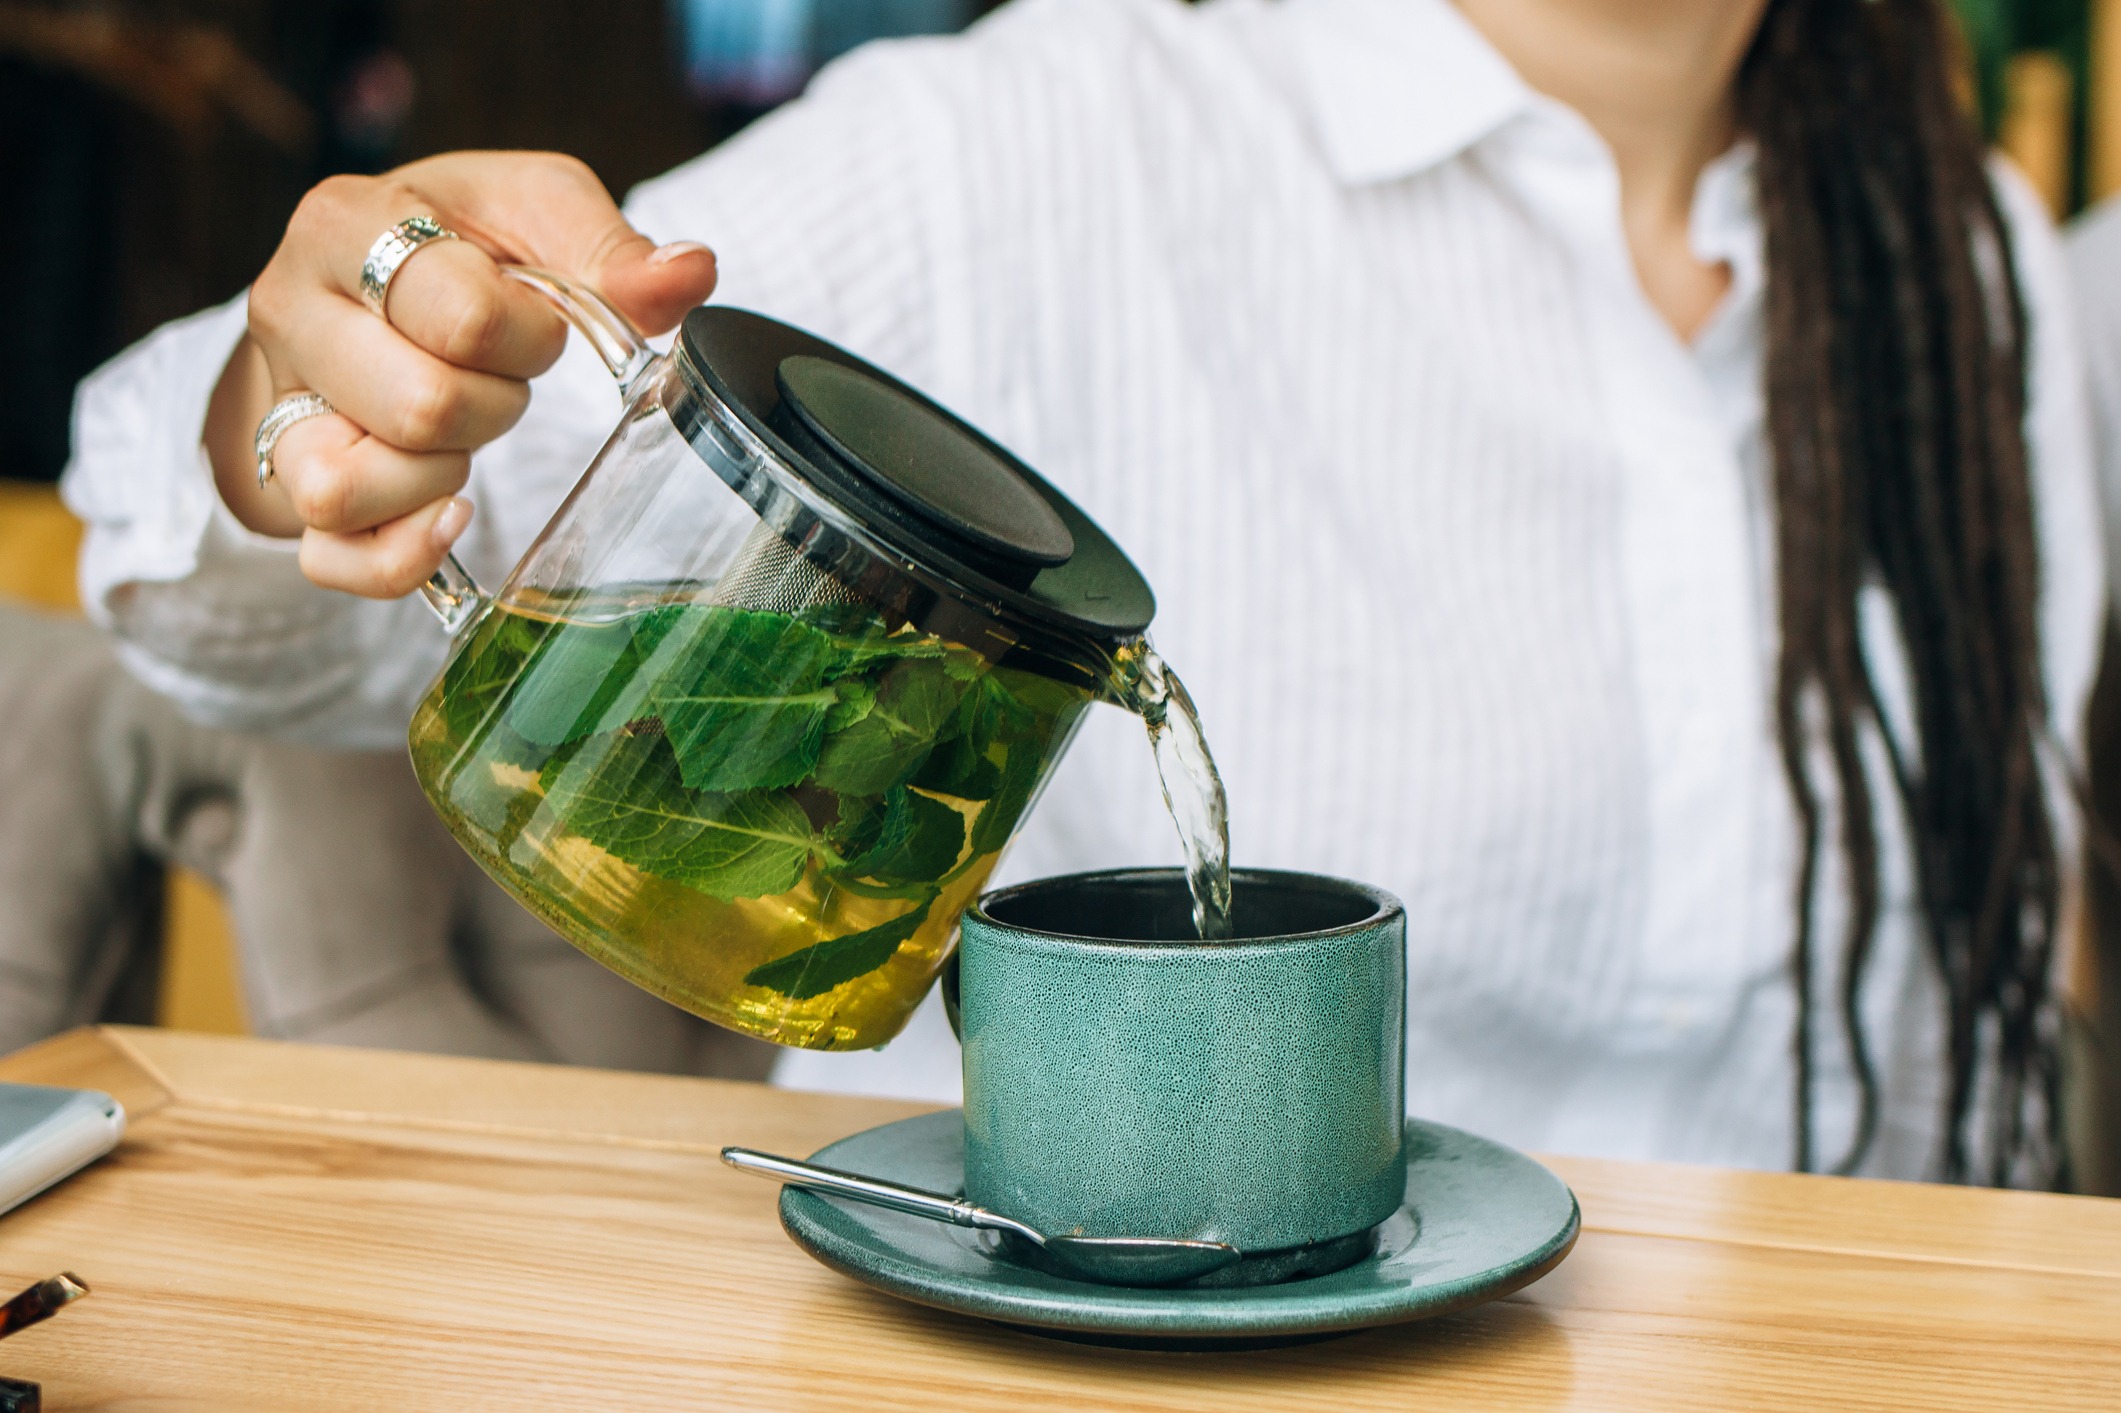 Obésité: Boire du thé noir favoriserait la perte de poids